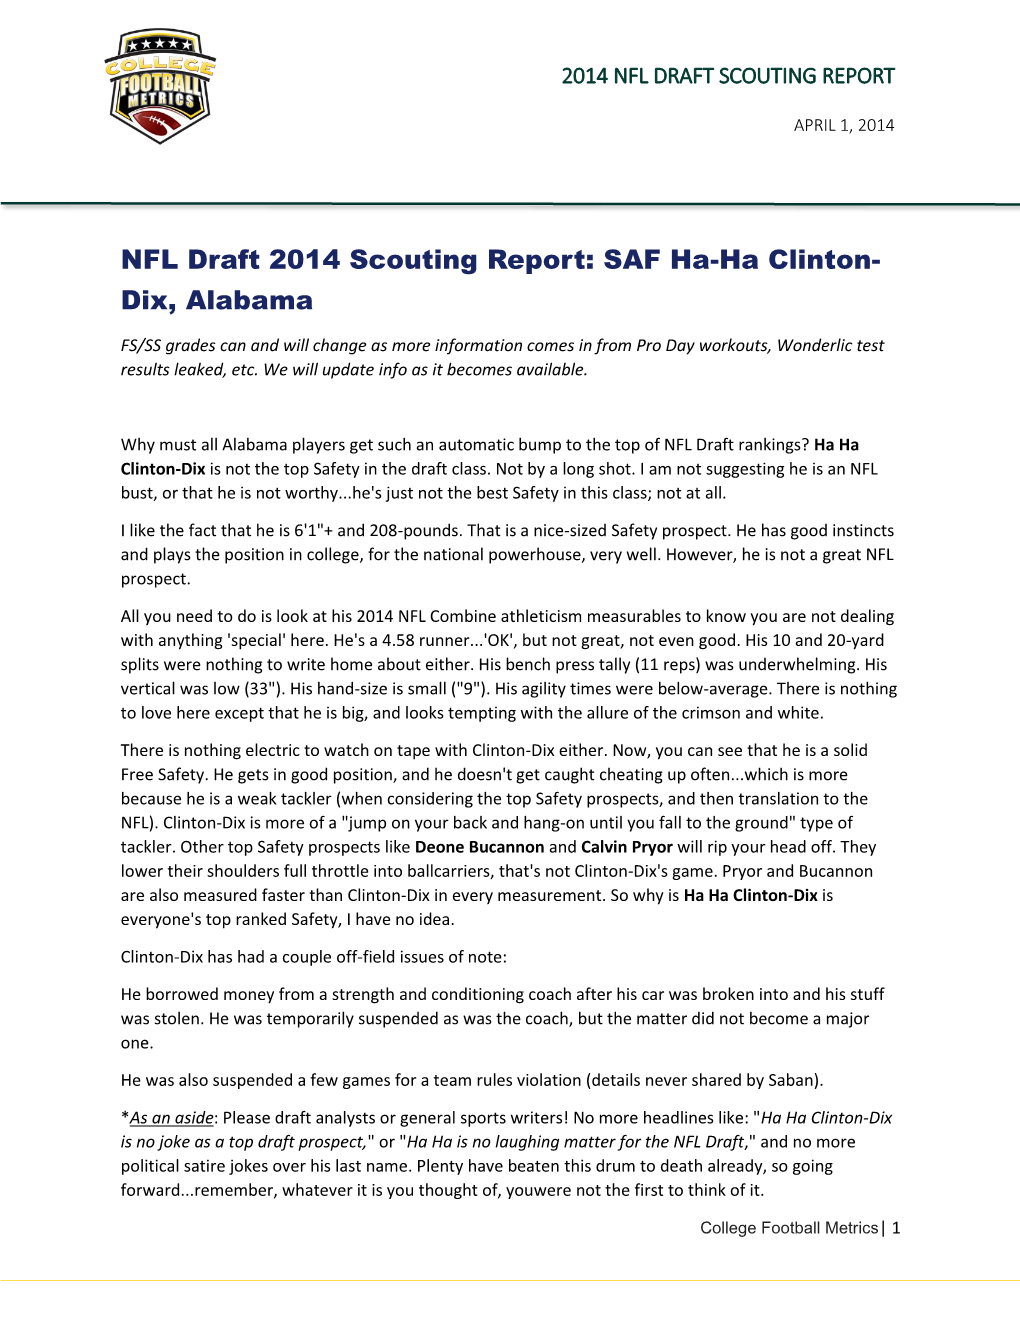 NFL Draft 2014 Scouting Report: SAF Ha-Ha Clinton- Dix, Alabama